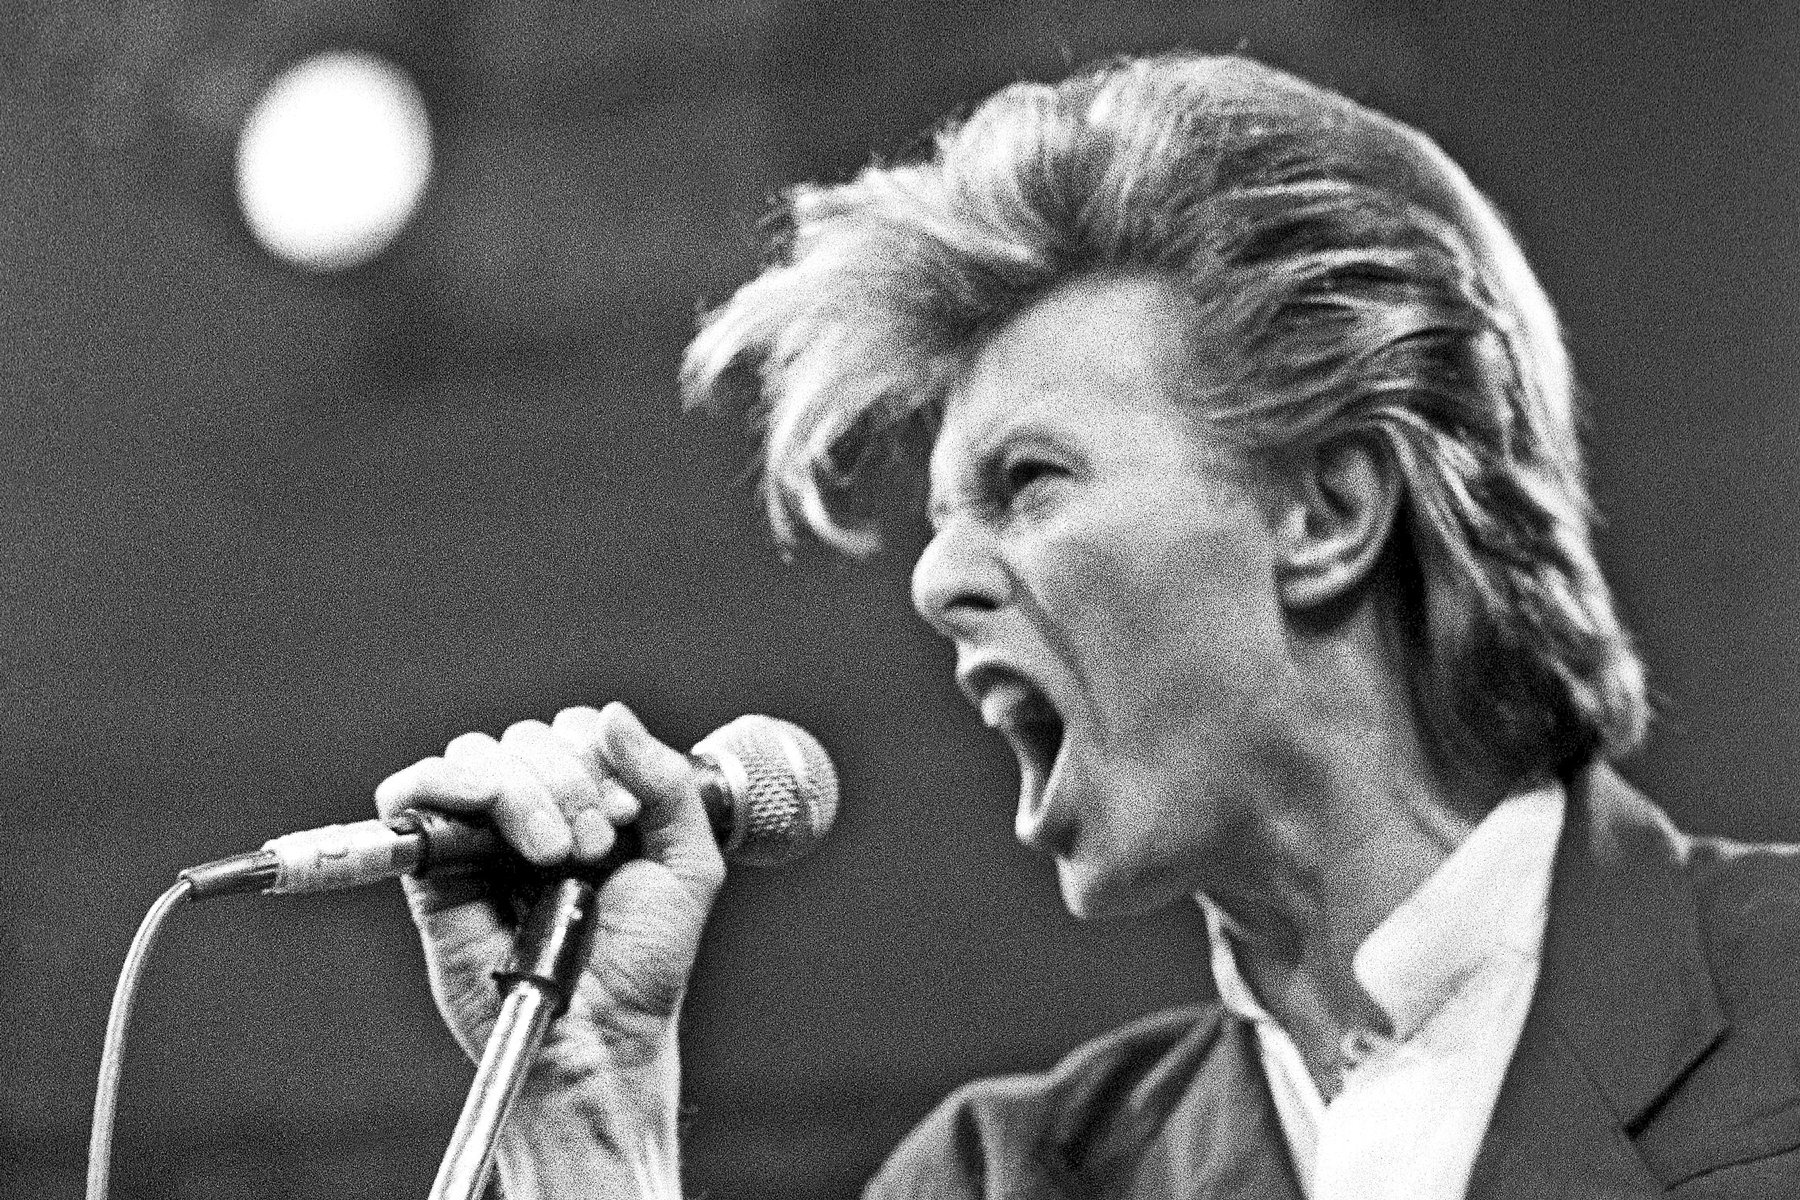 David Bowie: Stardust Memories